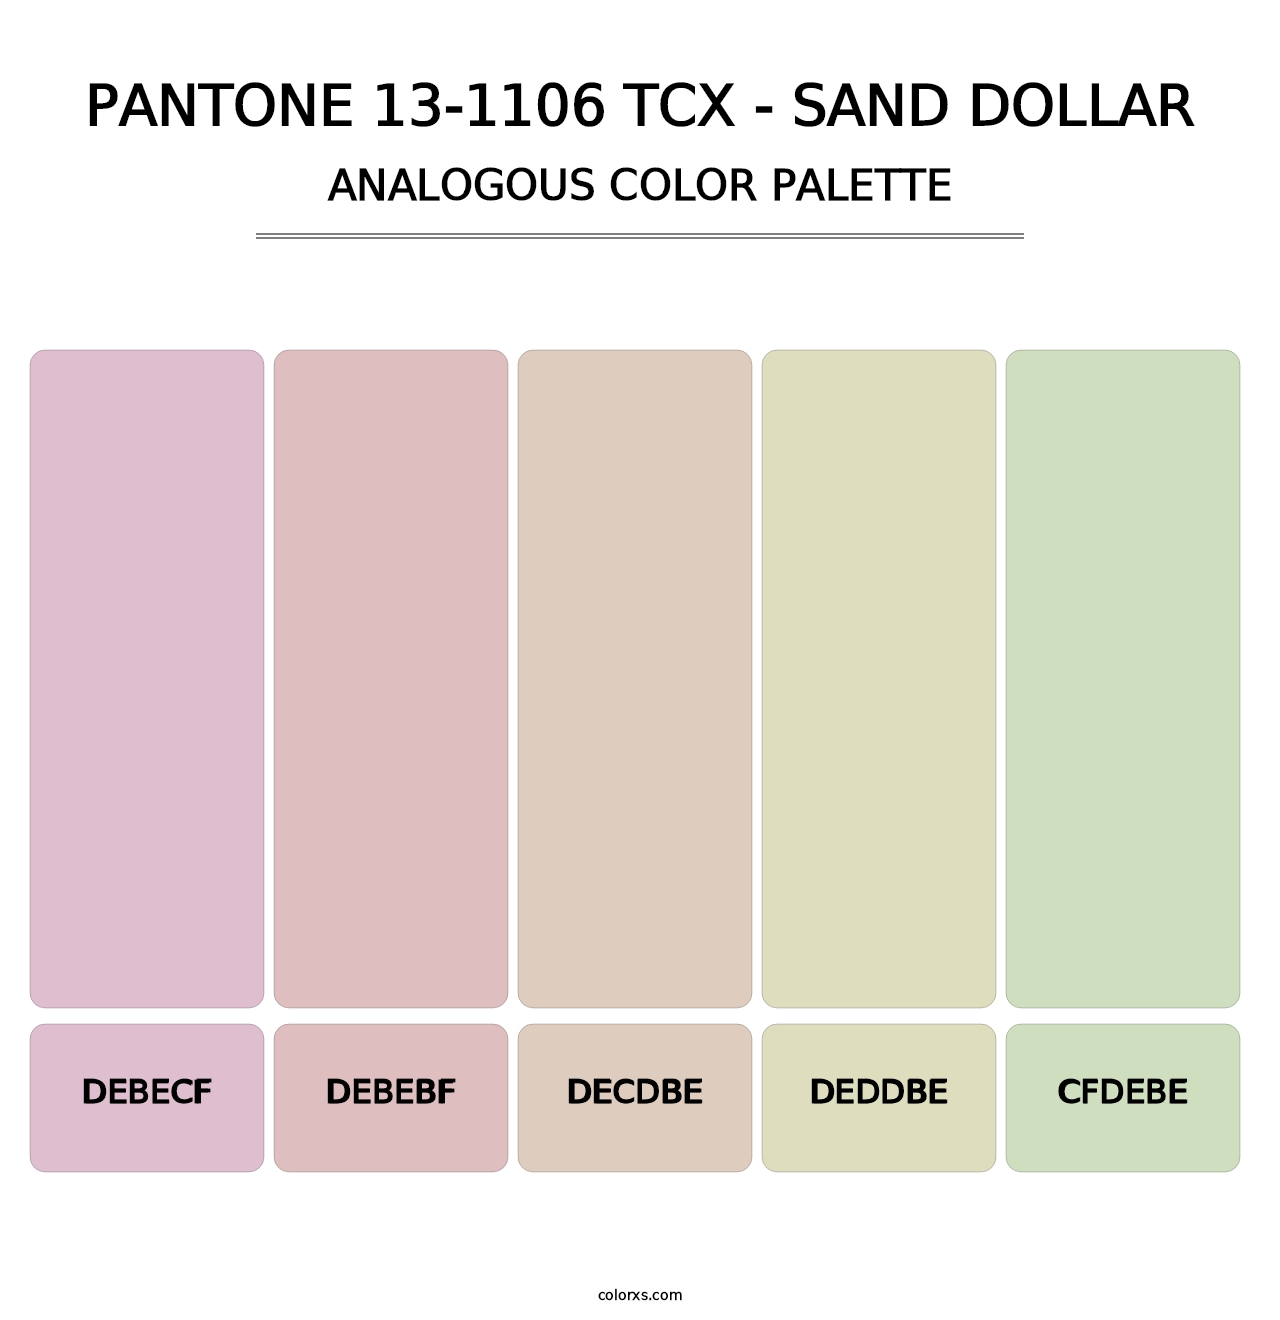 PANTONE 13-1106 TCX - Sand Dollar - Analogous Color Palette